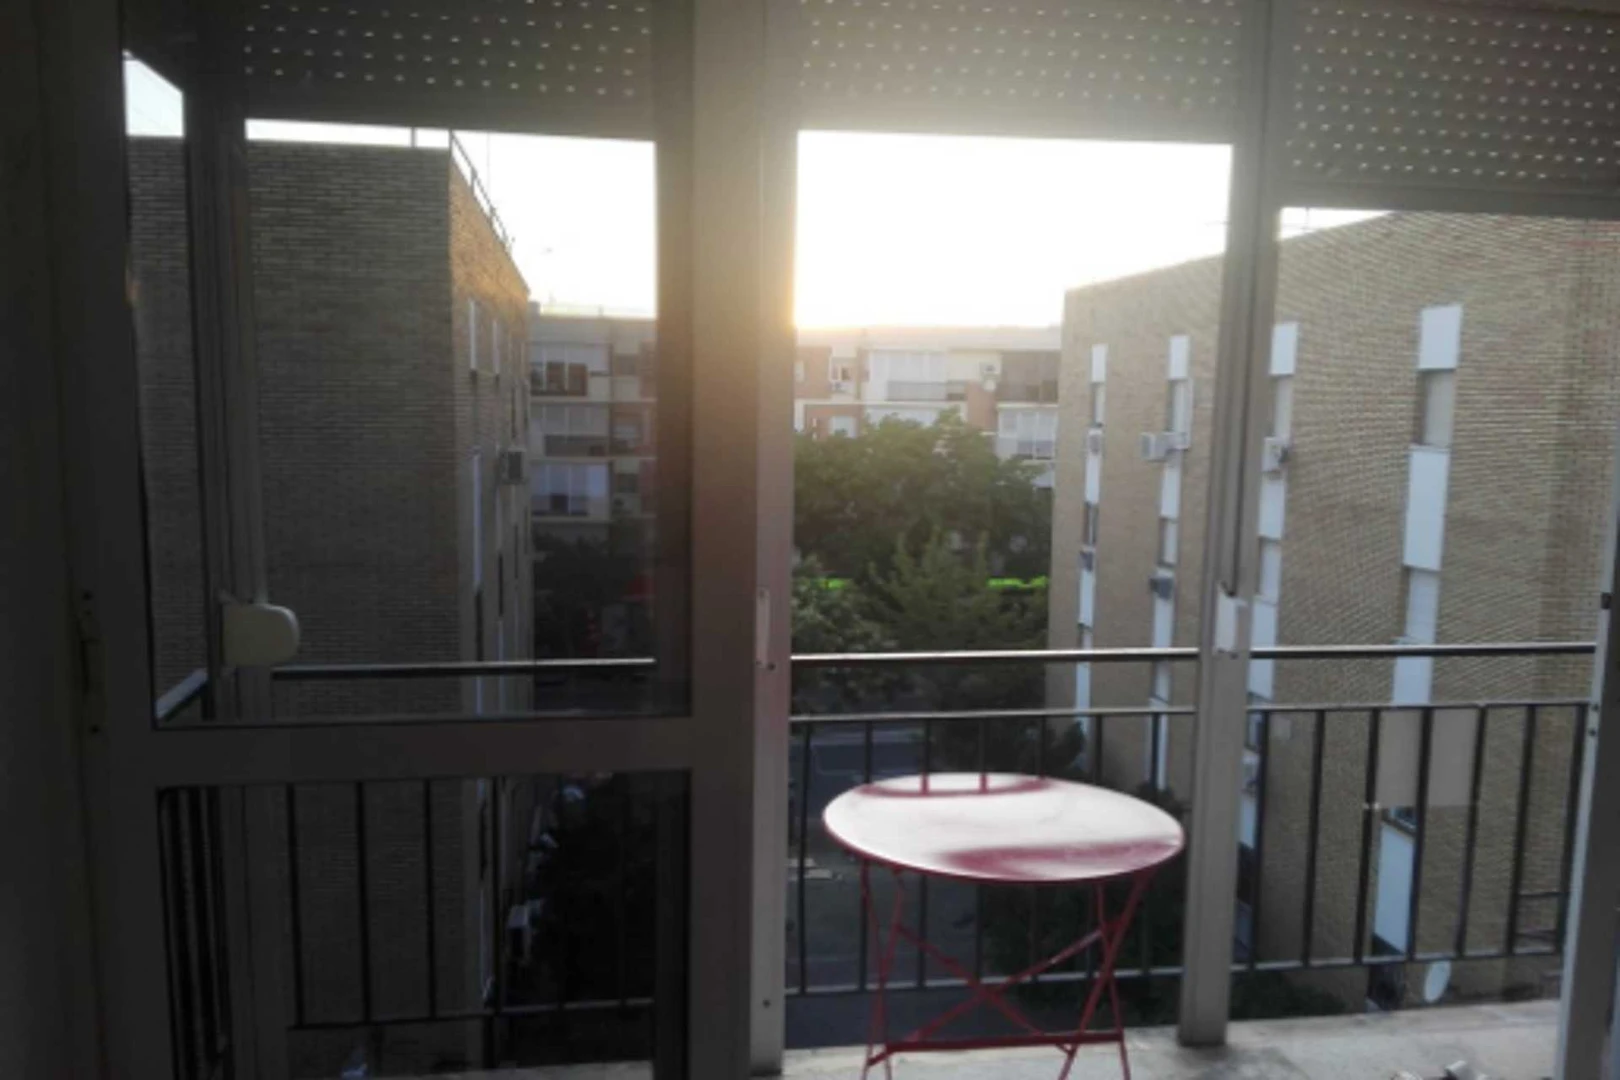 Habitación compartida con otro estudiante en Sevilla